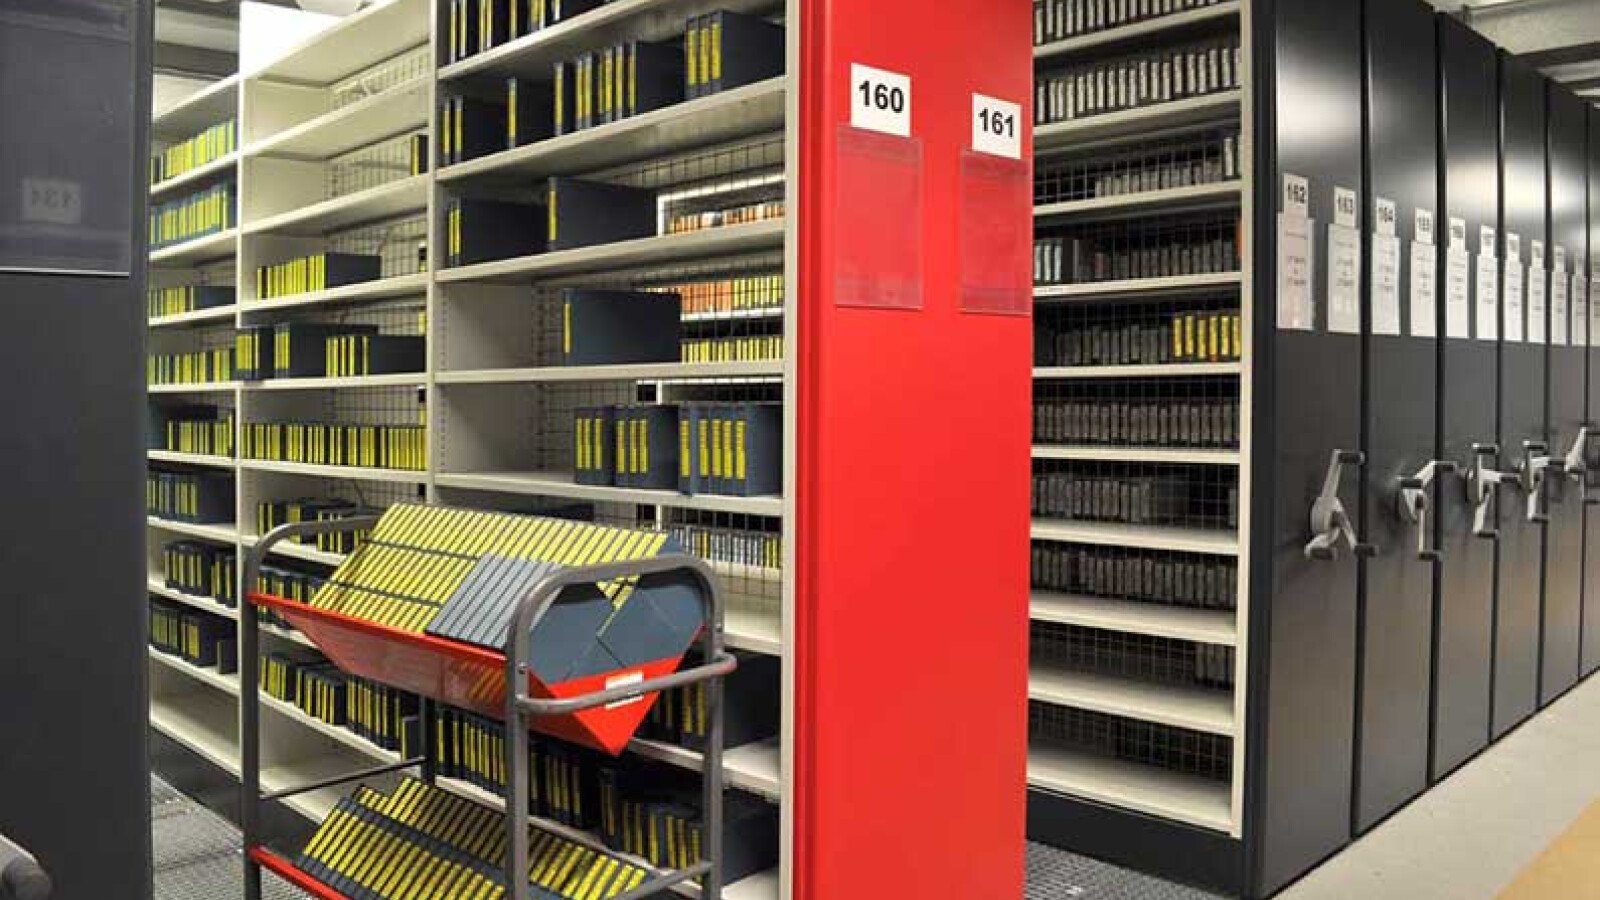 BBC Archive Centre Perivale, United Kingdom 